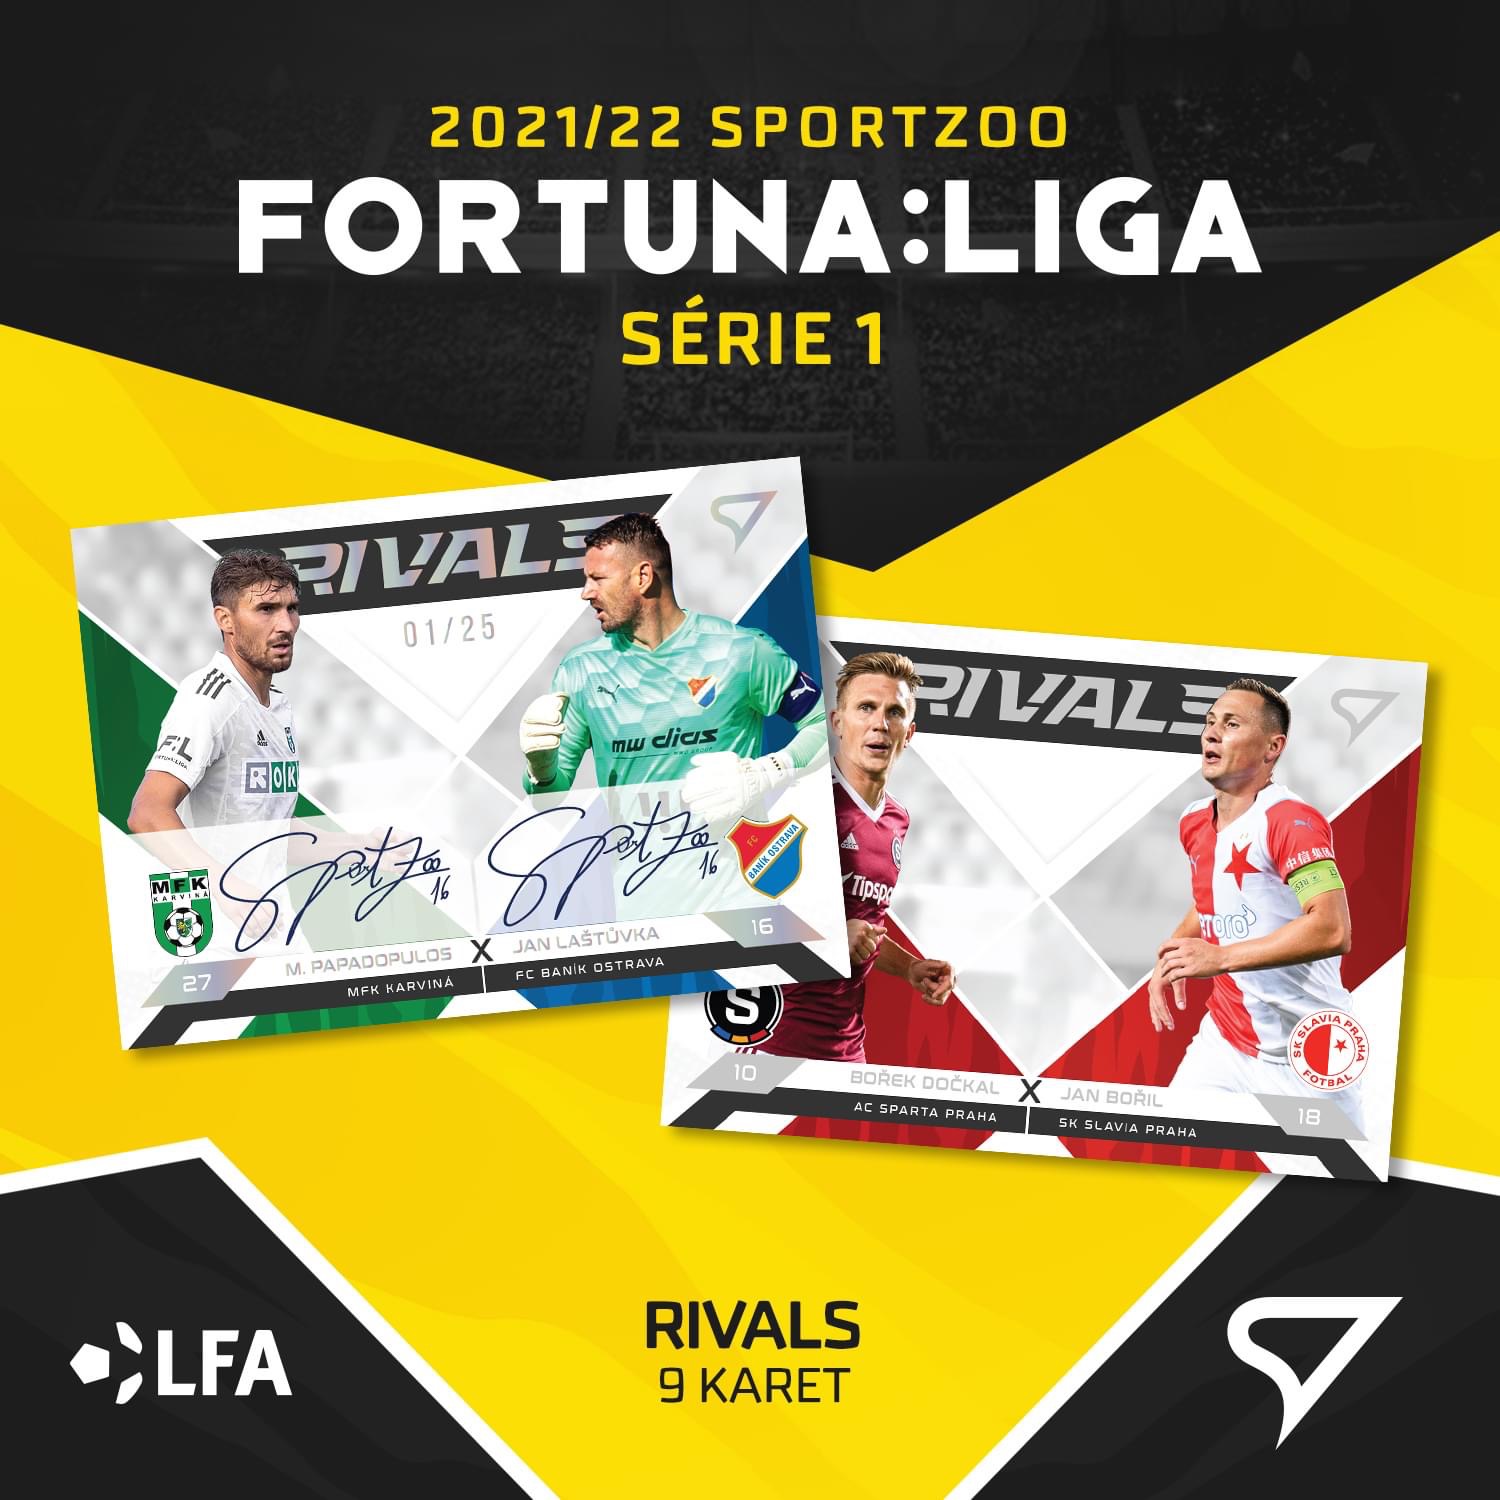 Rivals kompletni set 9 karet SportZoo FORTUNA:LIGA 2021/22 1. serie